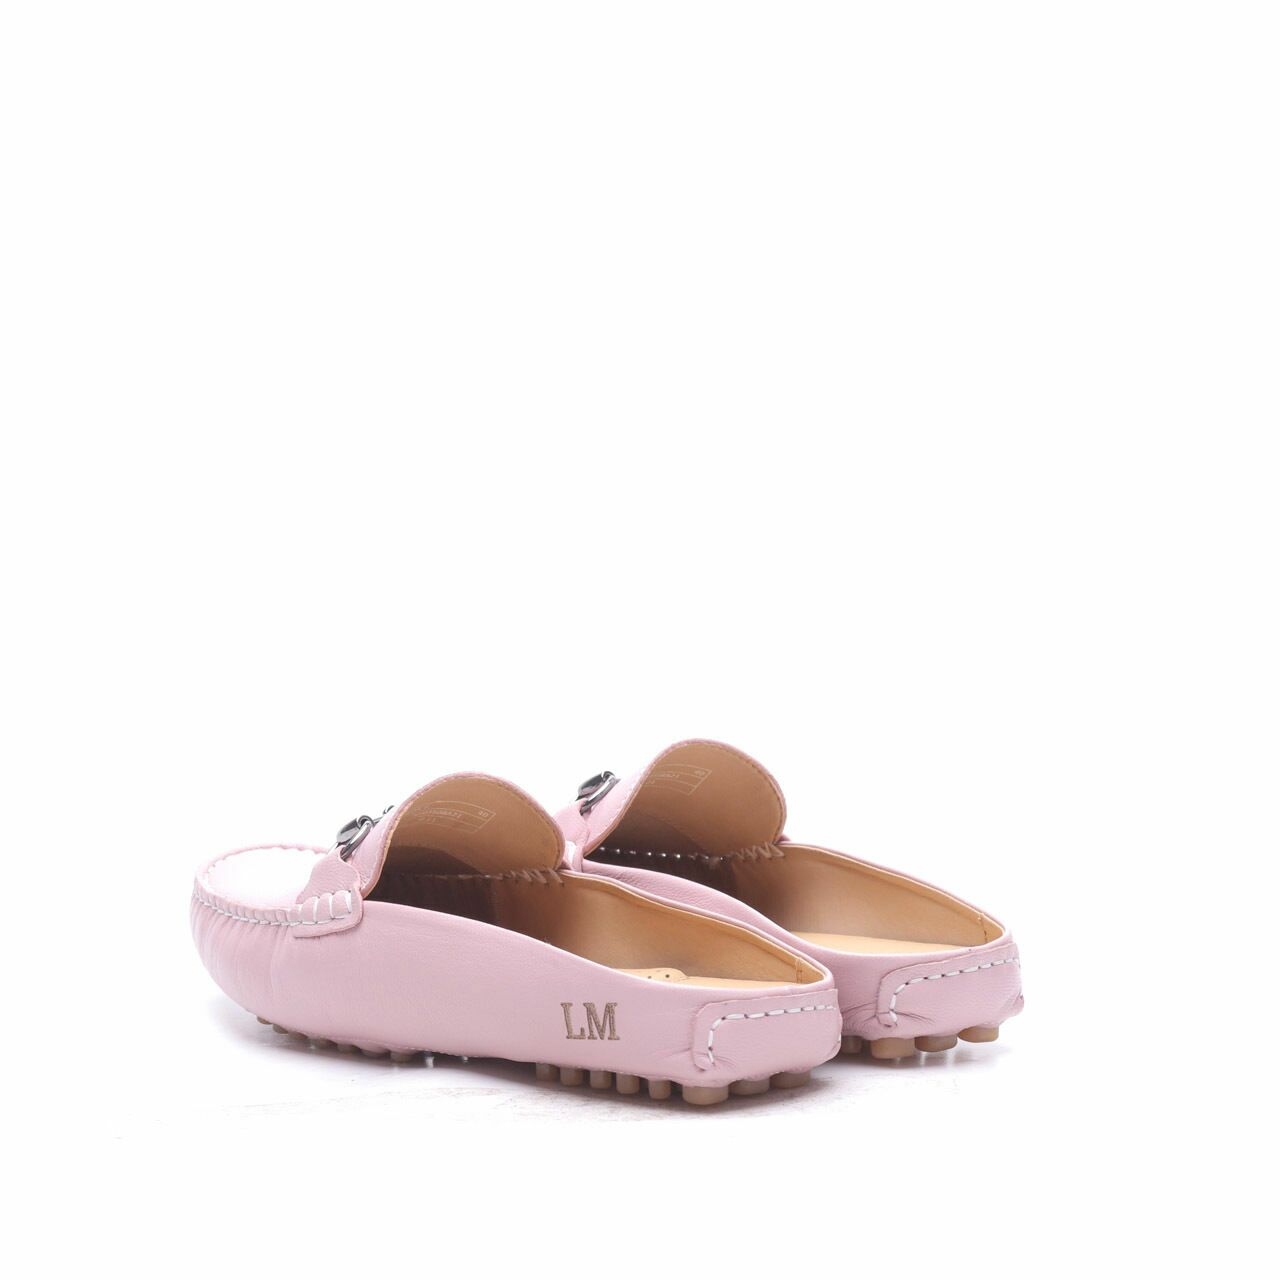 Gino Mariani Pink Elda 6 Mules Sandals